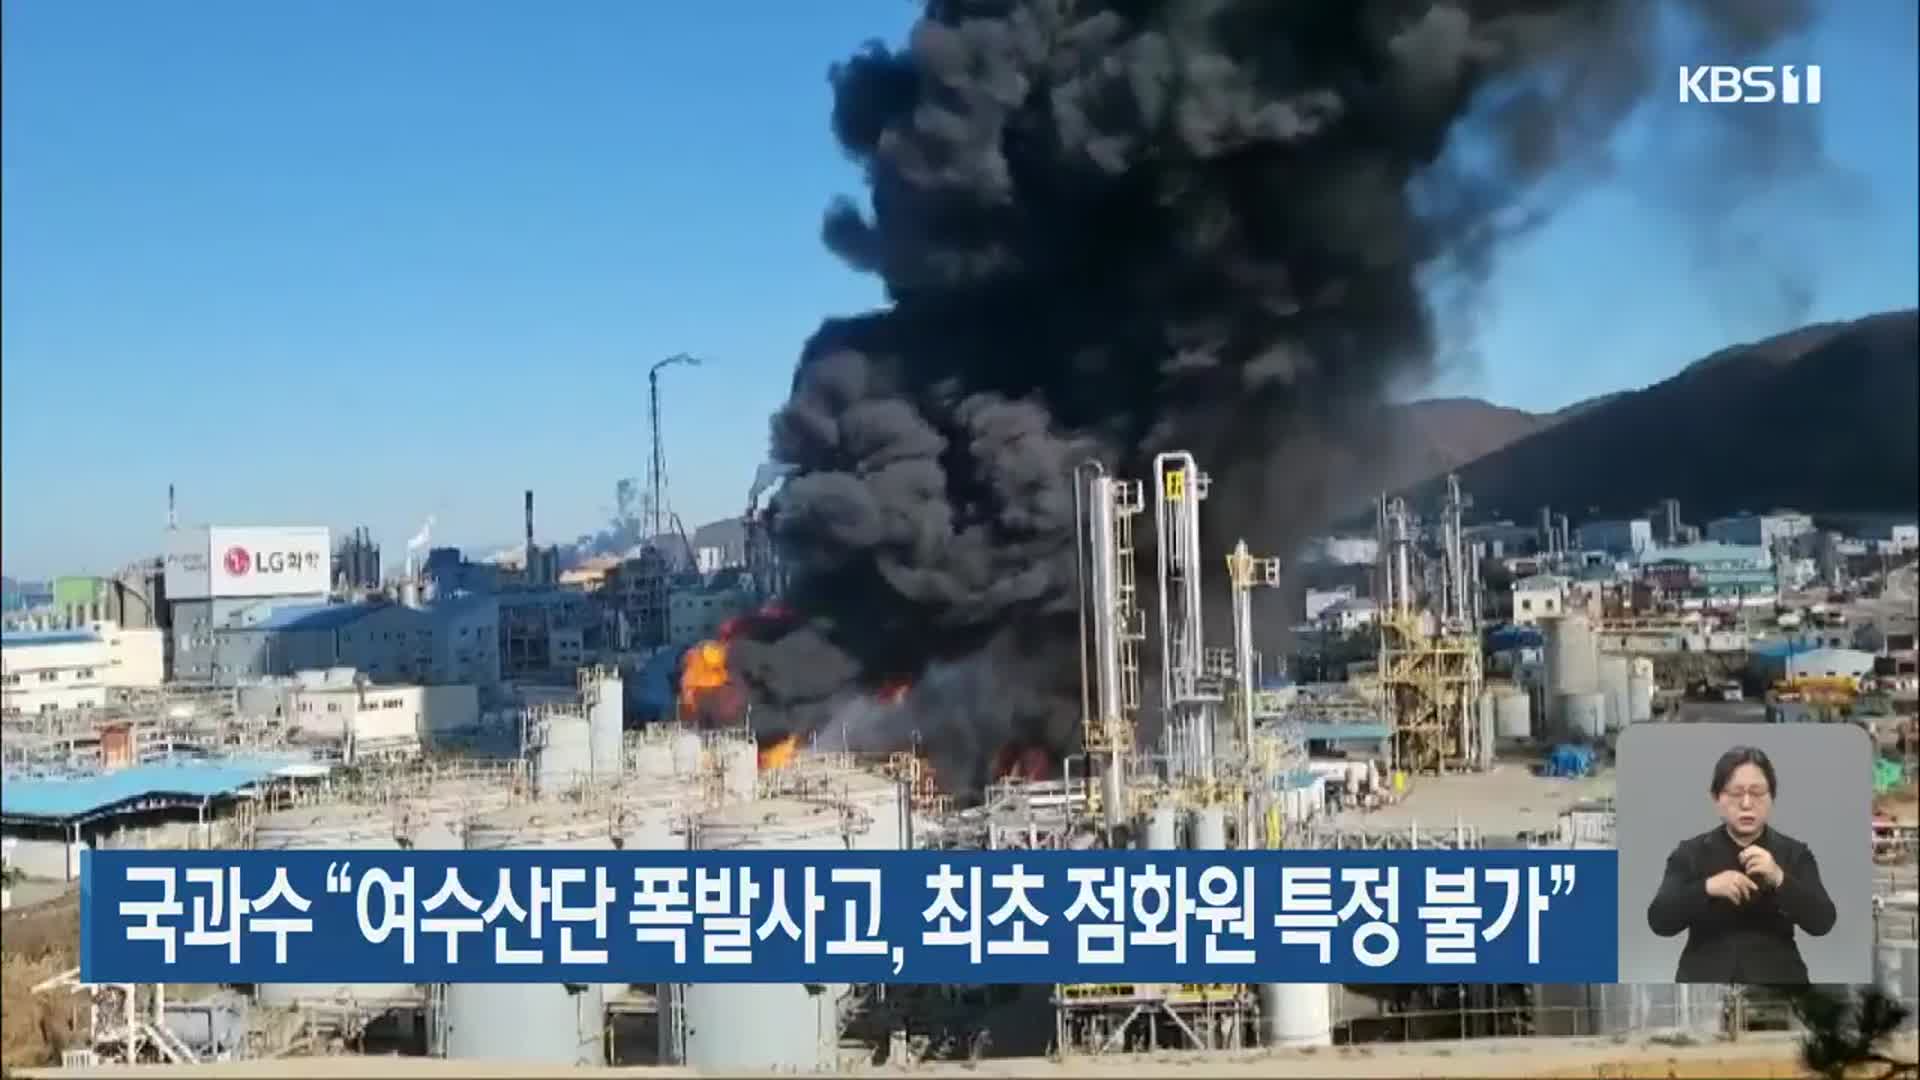 국과수 “여수산단 폭발사고, 최초 점화원 특정 불가”